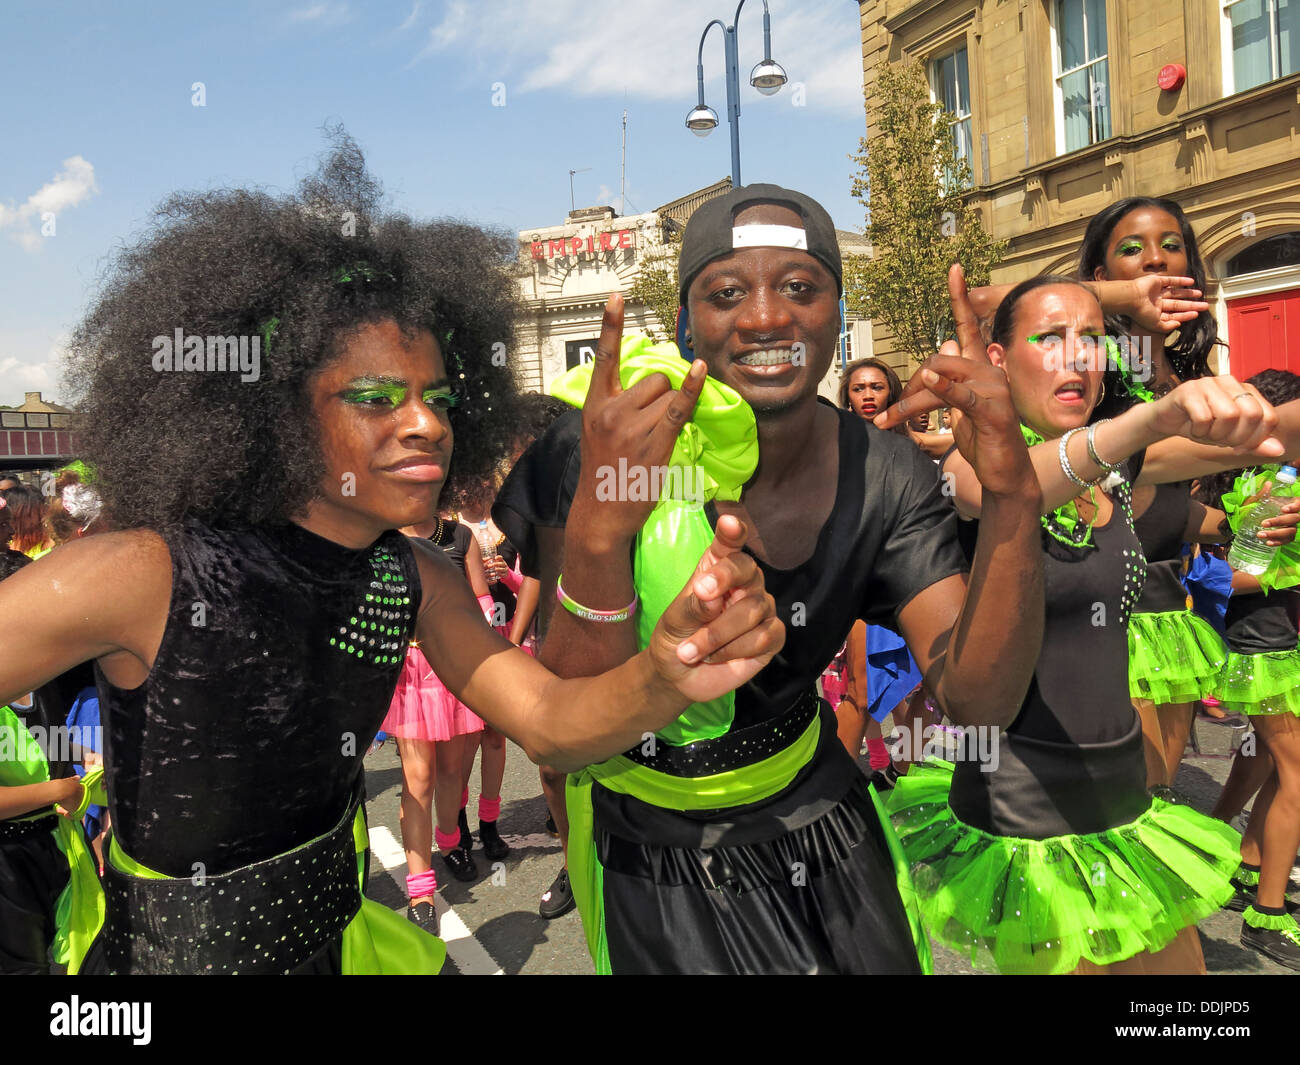 Danseurs costumés en vert de Huddersfield Carnival parade 2013 fête de rue Africains des Caraïbes Banque D'Images